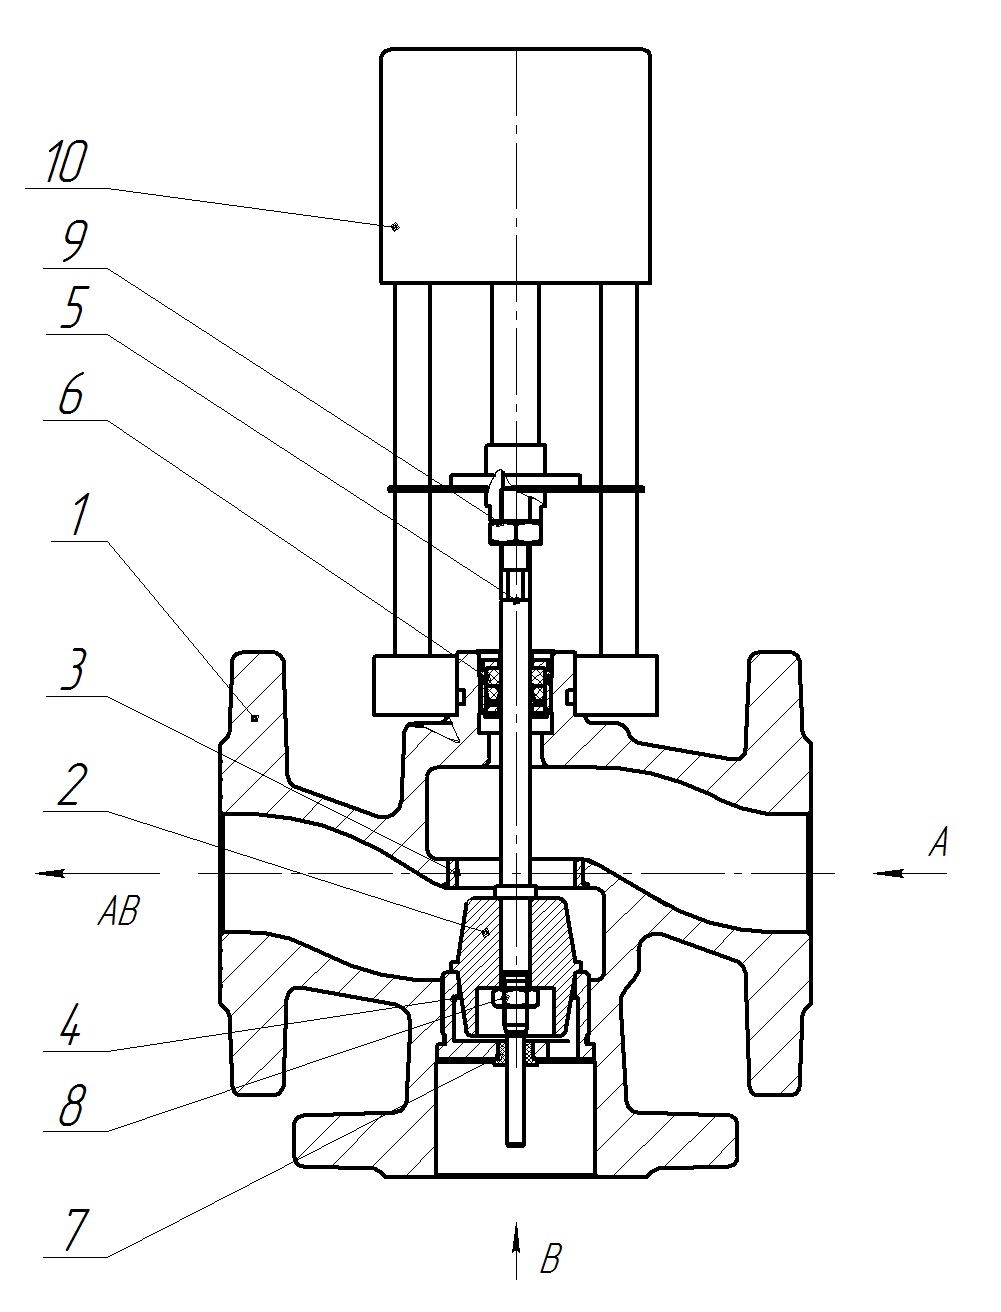 Клапан регулирующий трехходовой разделительный DN.ru 23ч901нж Ду25 Ру16 Kvs4 серый чугун СЧ20, фланцевый, Tmax до 150°С с электроприводом Катрабел TW-500-XD220